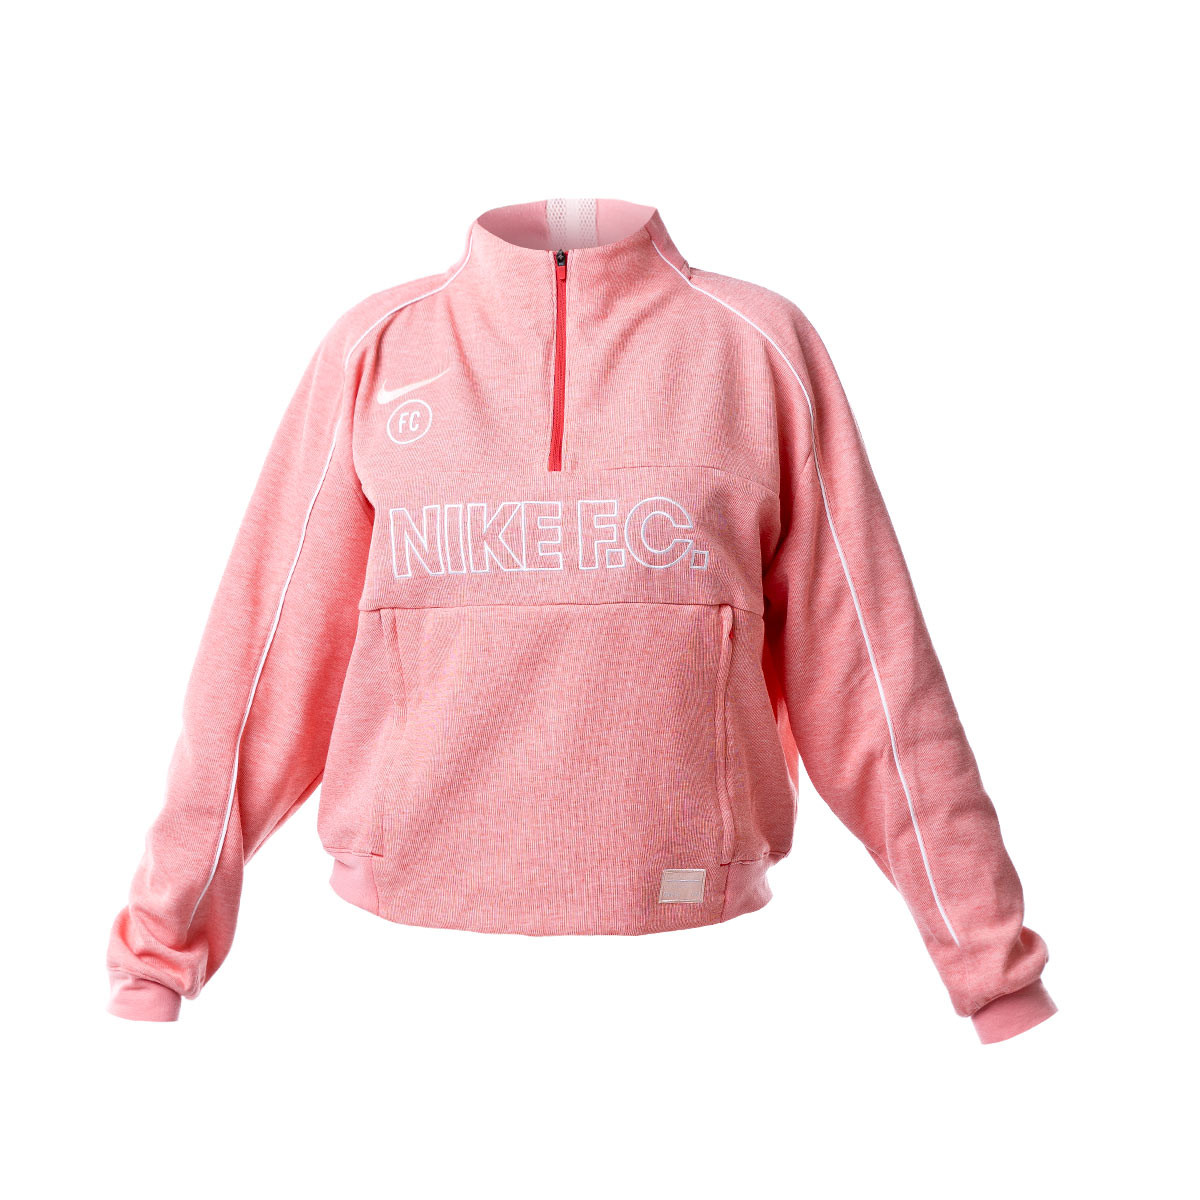 pink nike fc hoodie